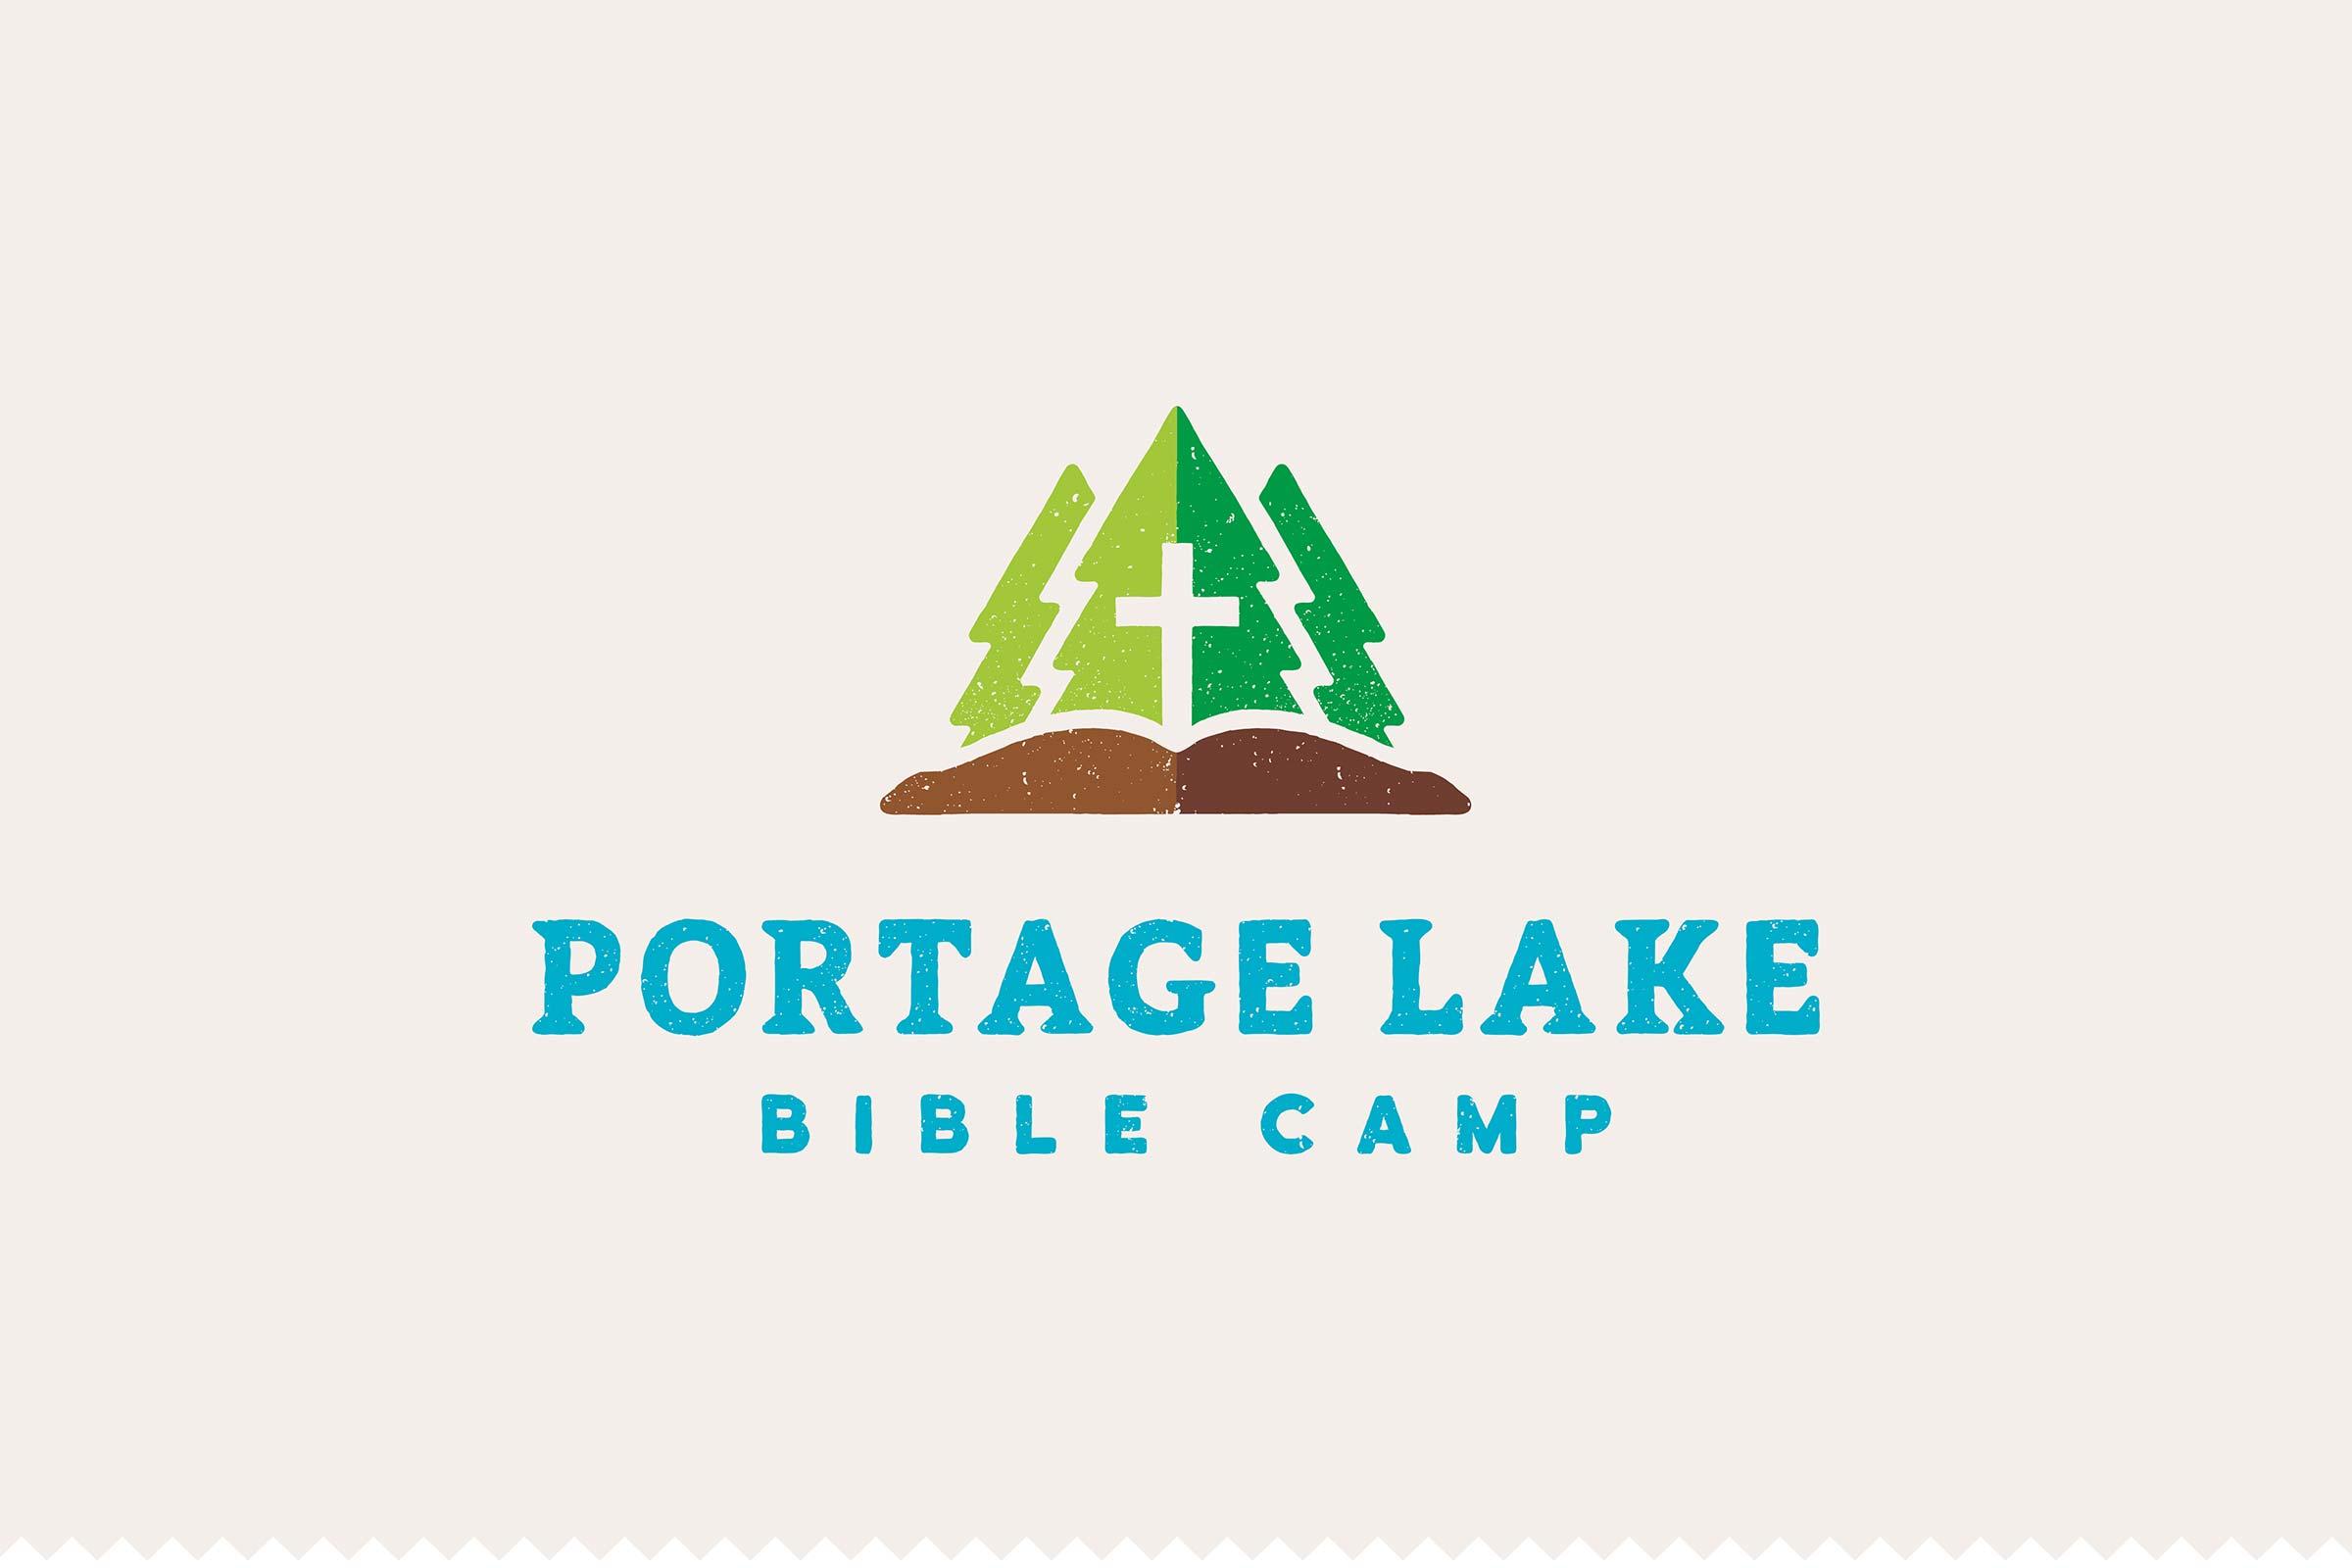 Fun Camp Logo - Portage Lake Bible Camp